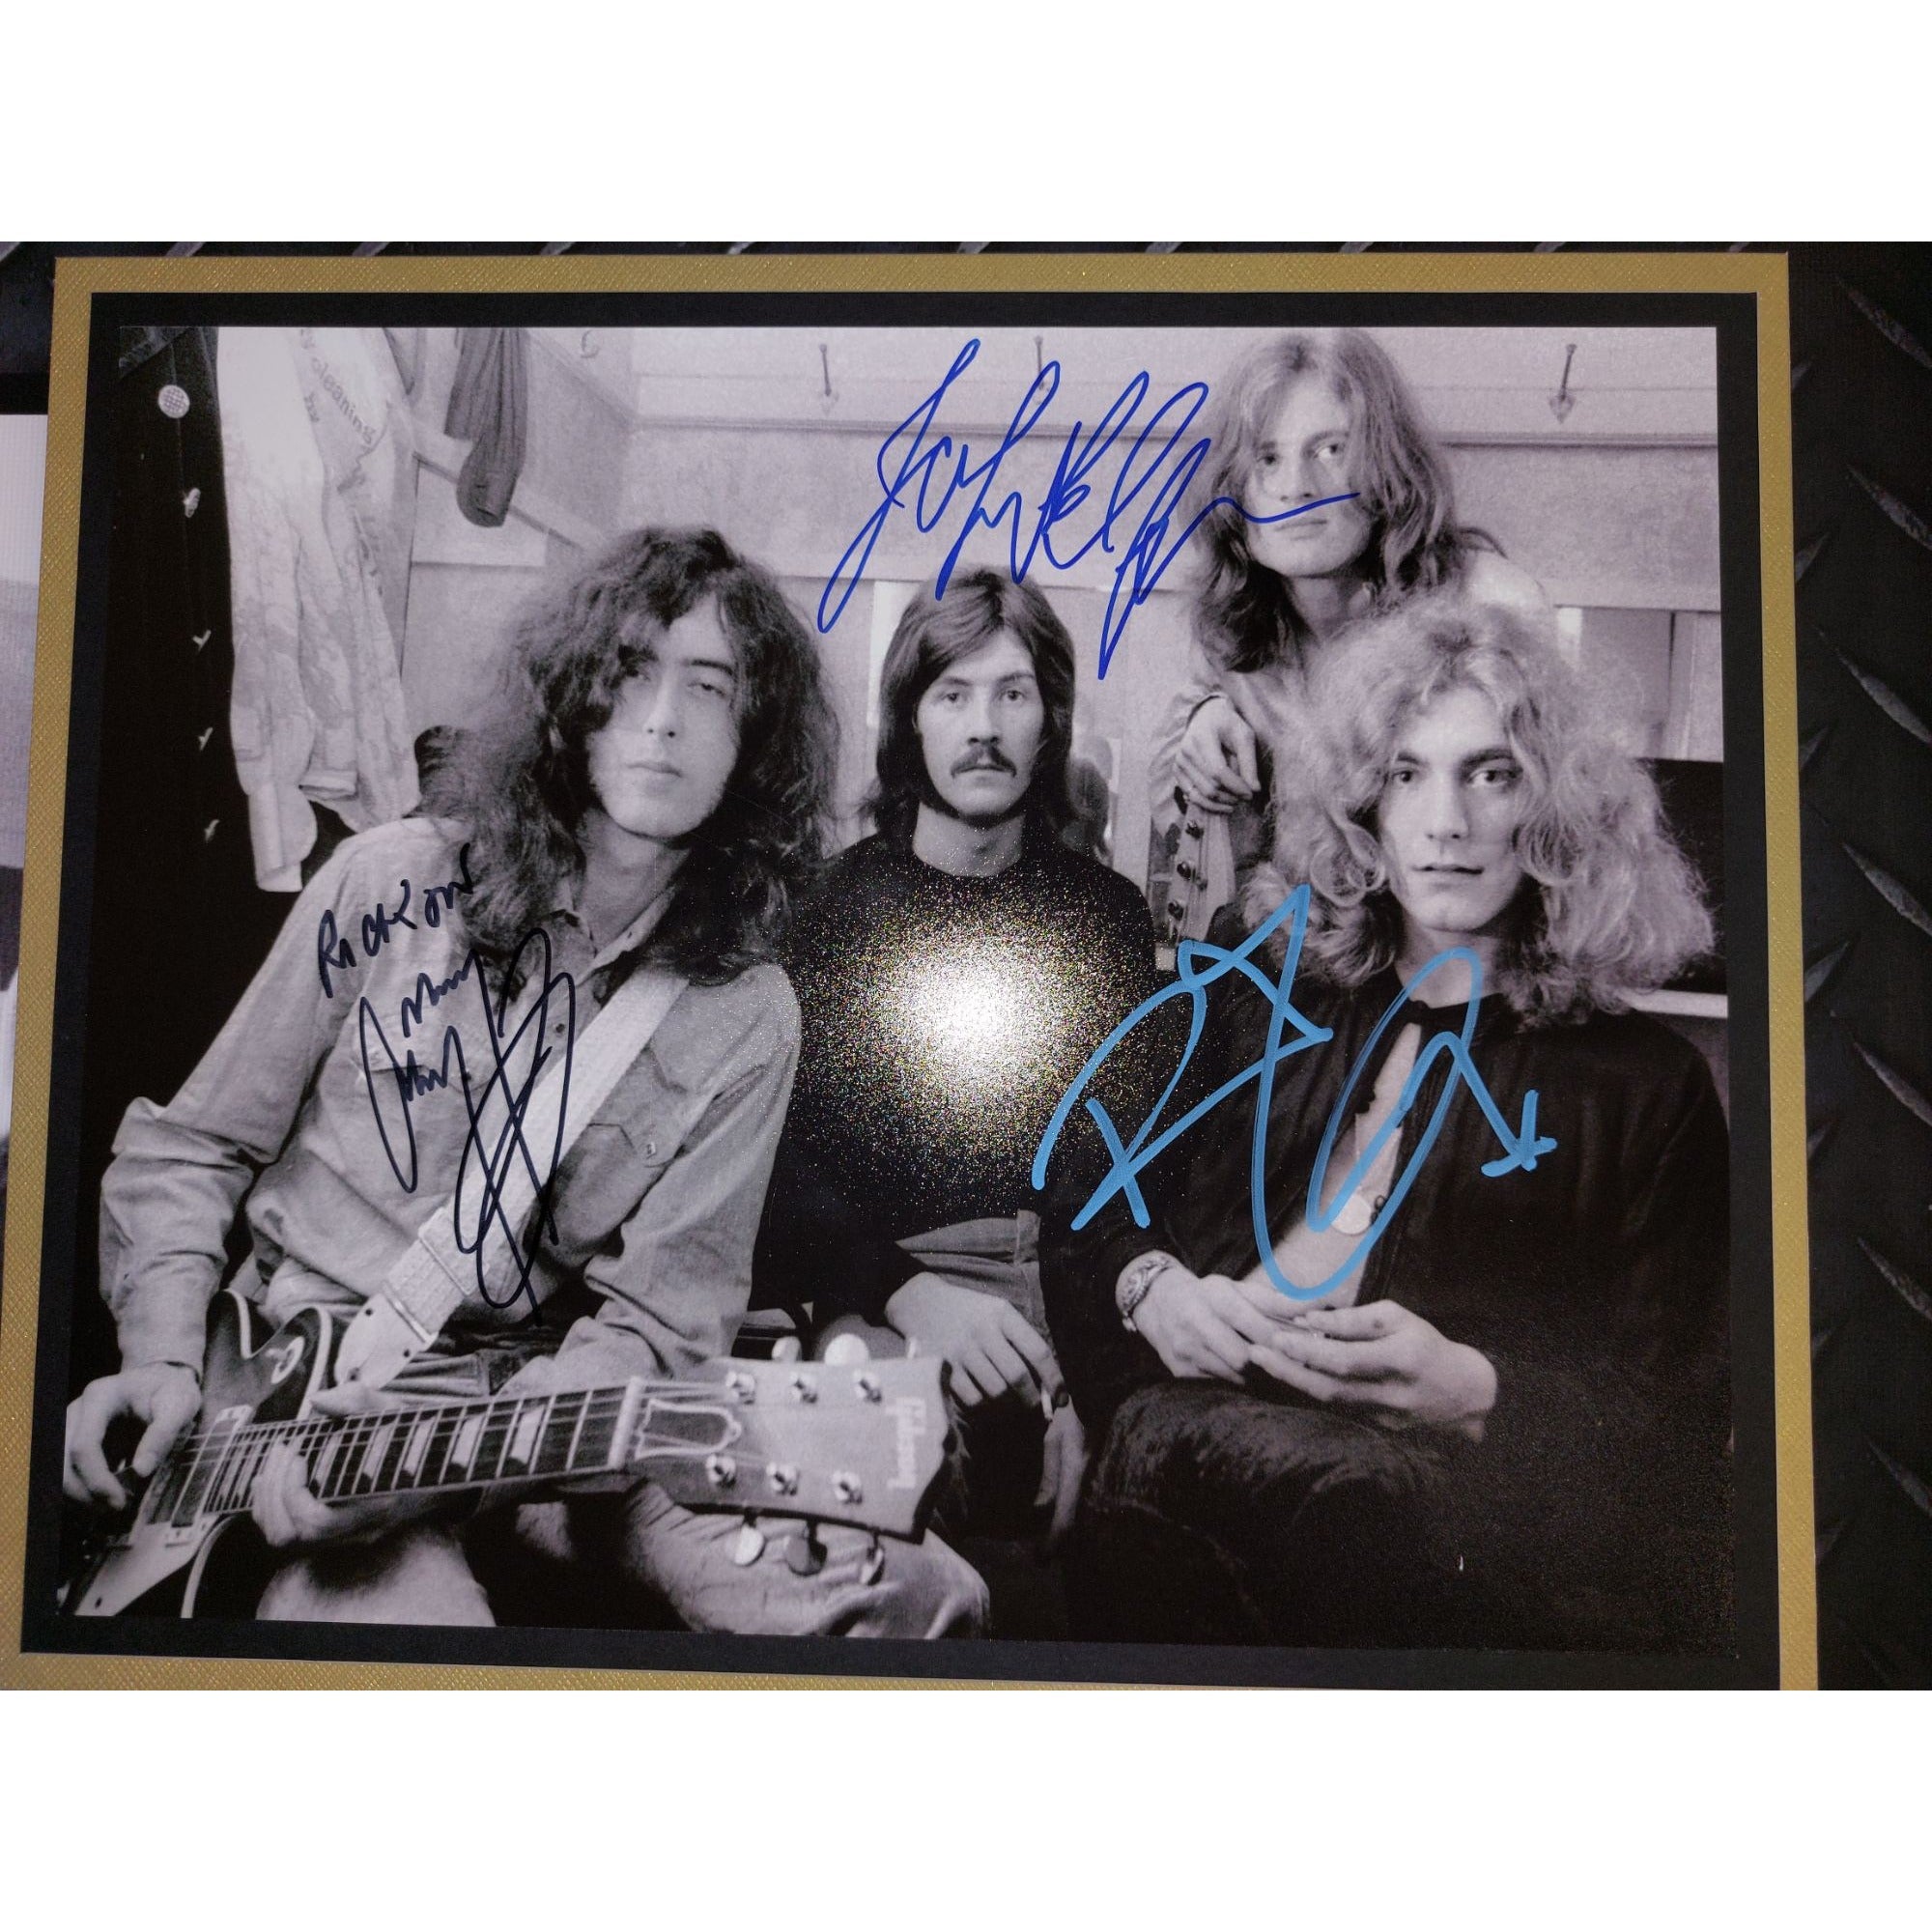 Led Zeppelin John Bonham Jimmy Page Robert Plant John Paul Jones signed and framed 24x35